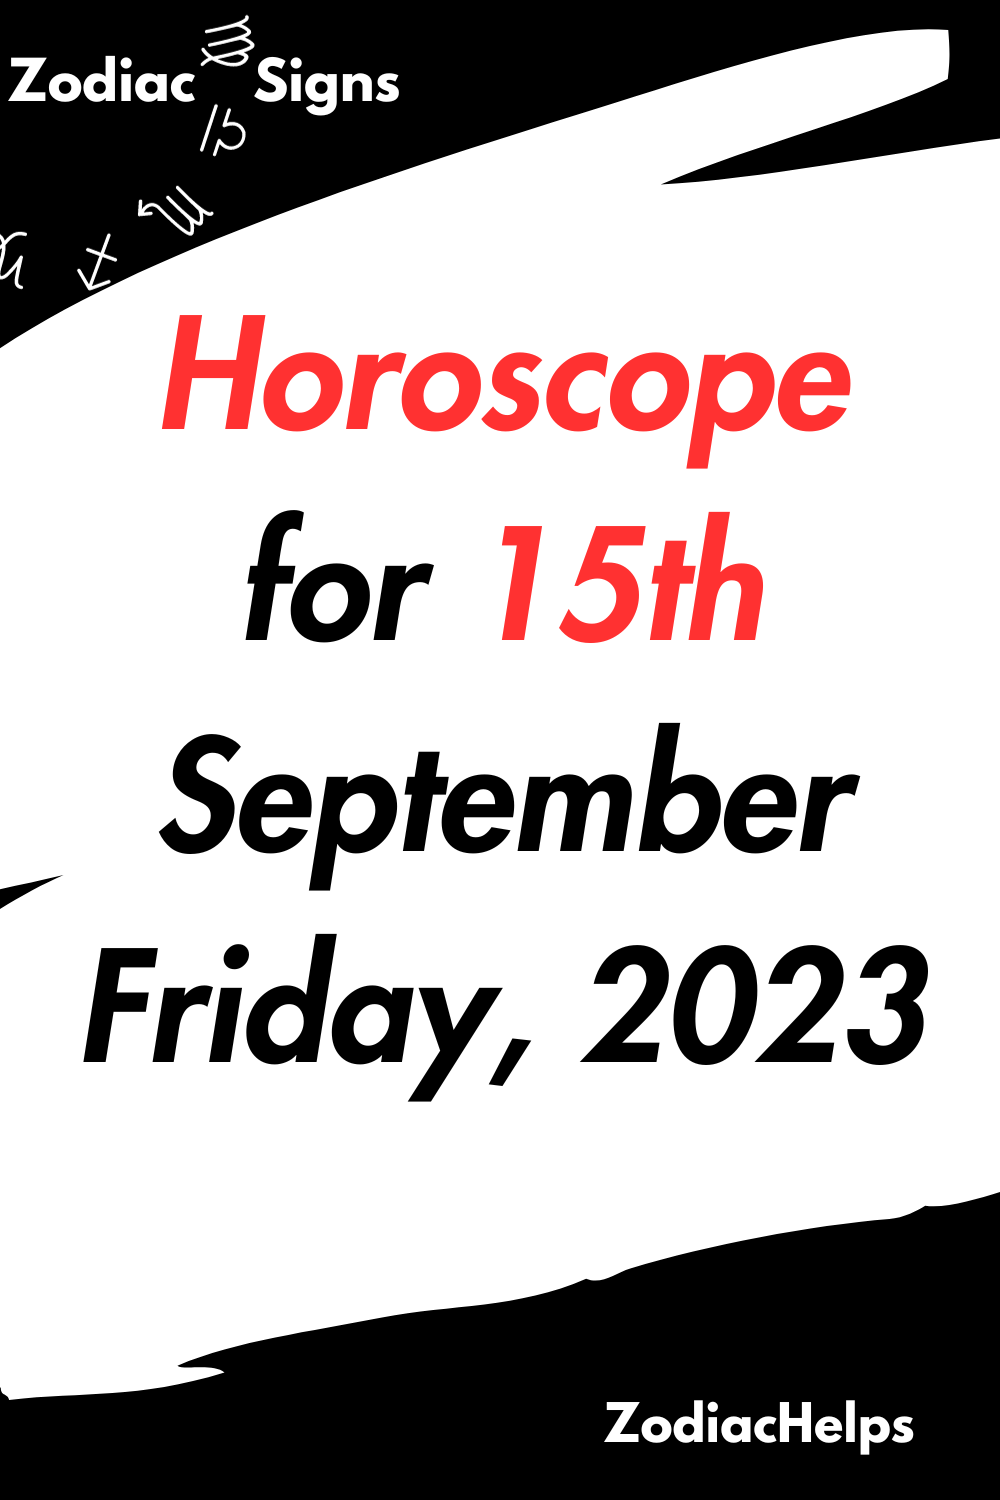 Horoscope for 15th September Friday, 2023